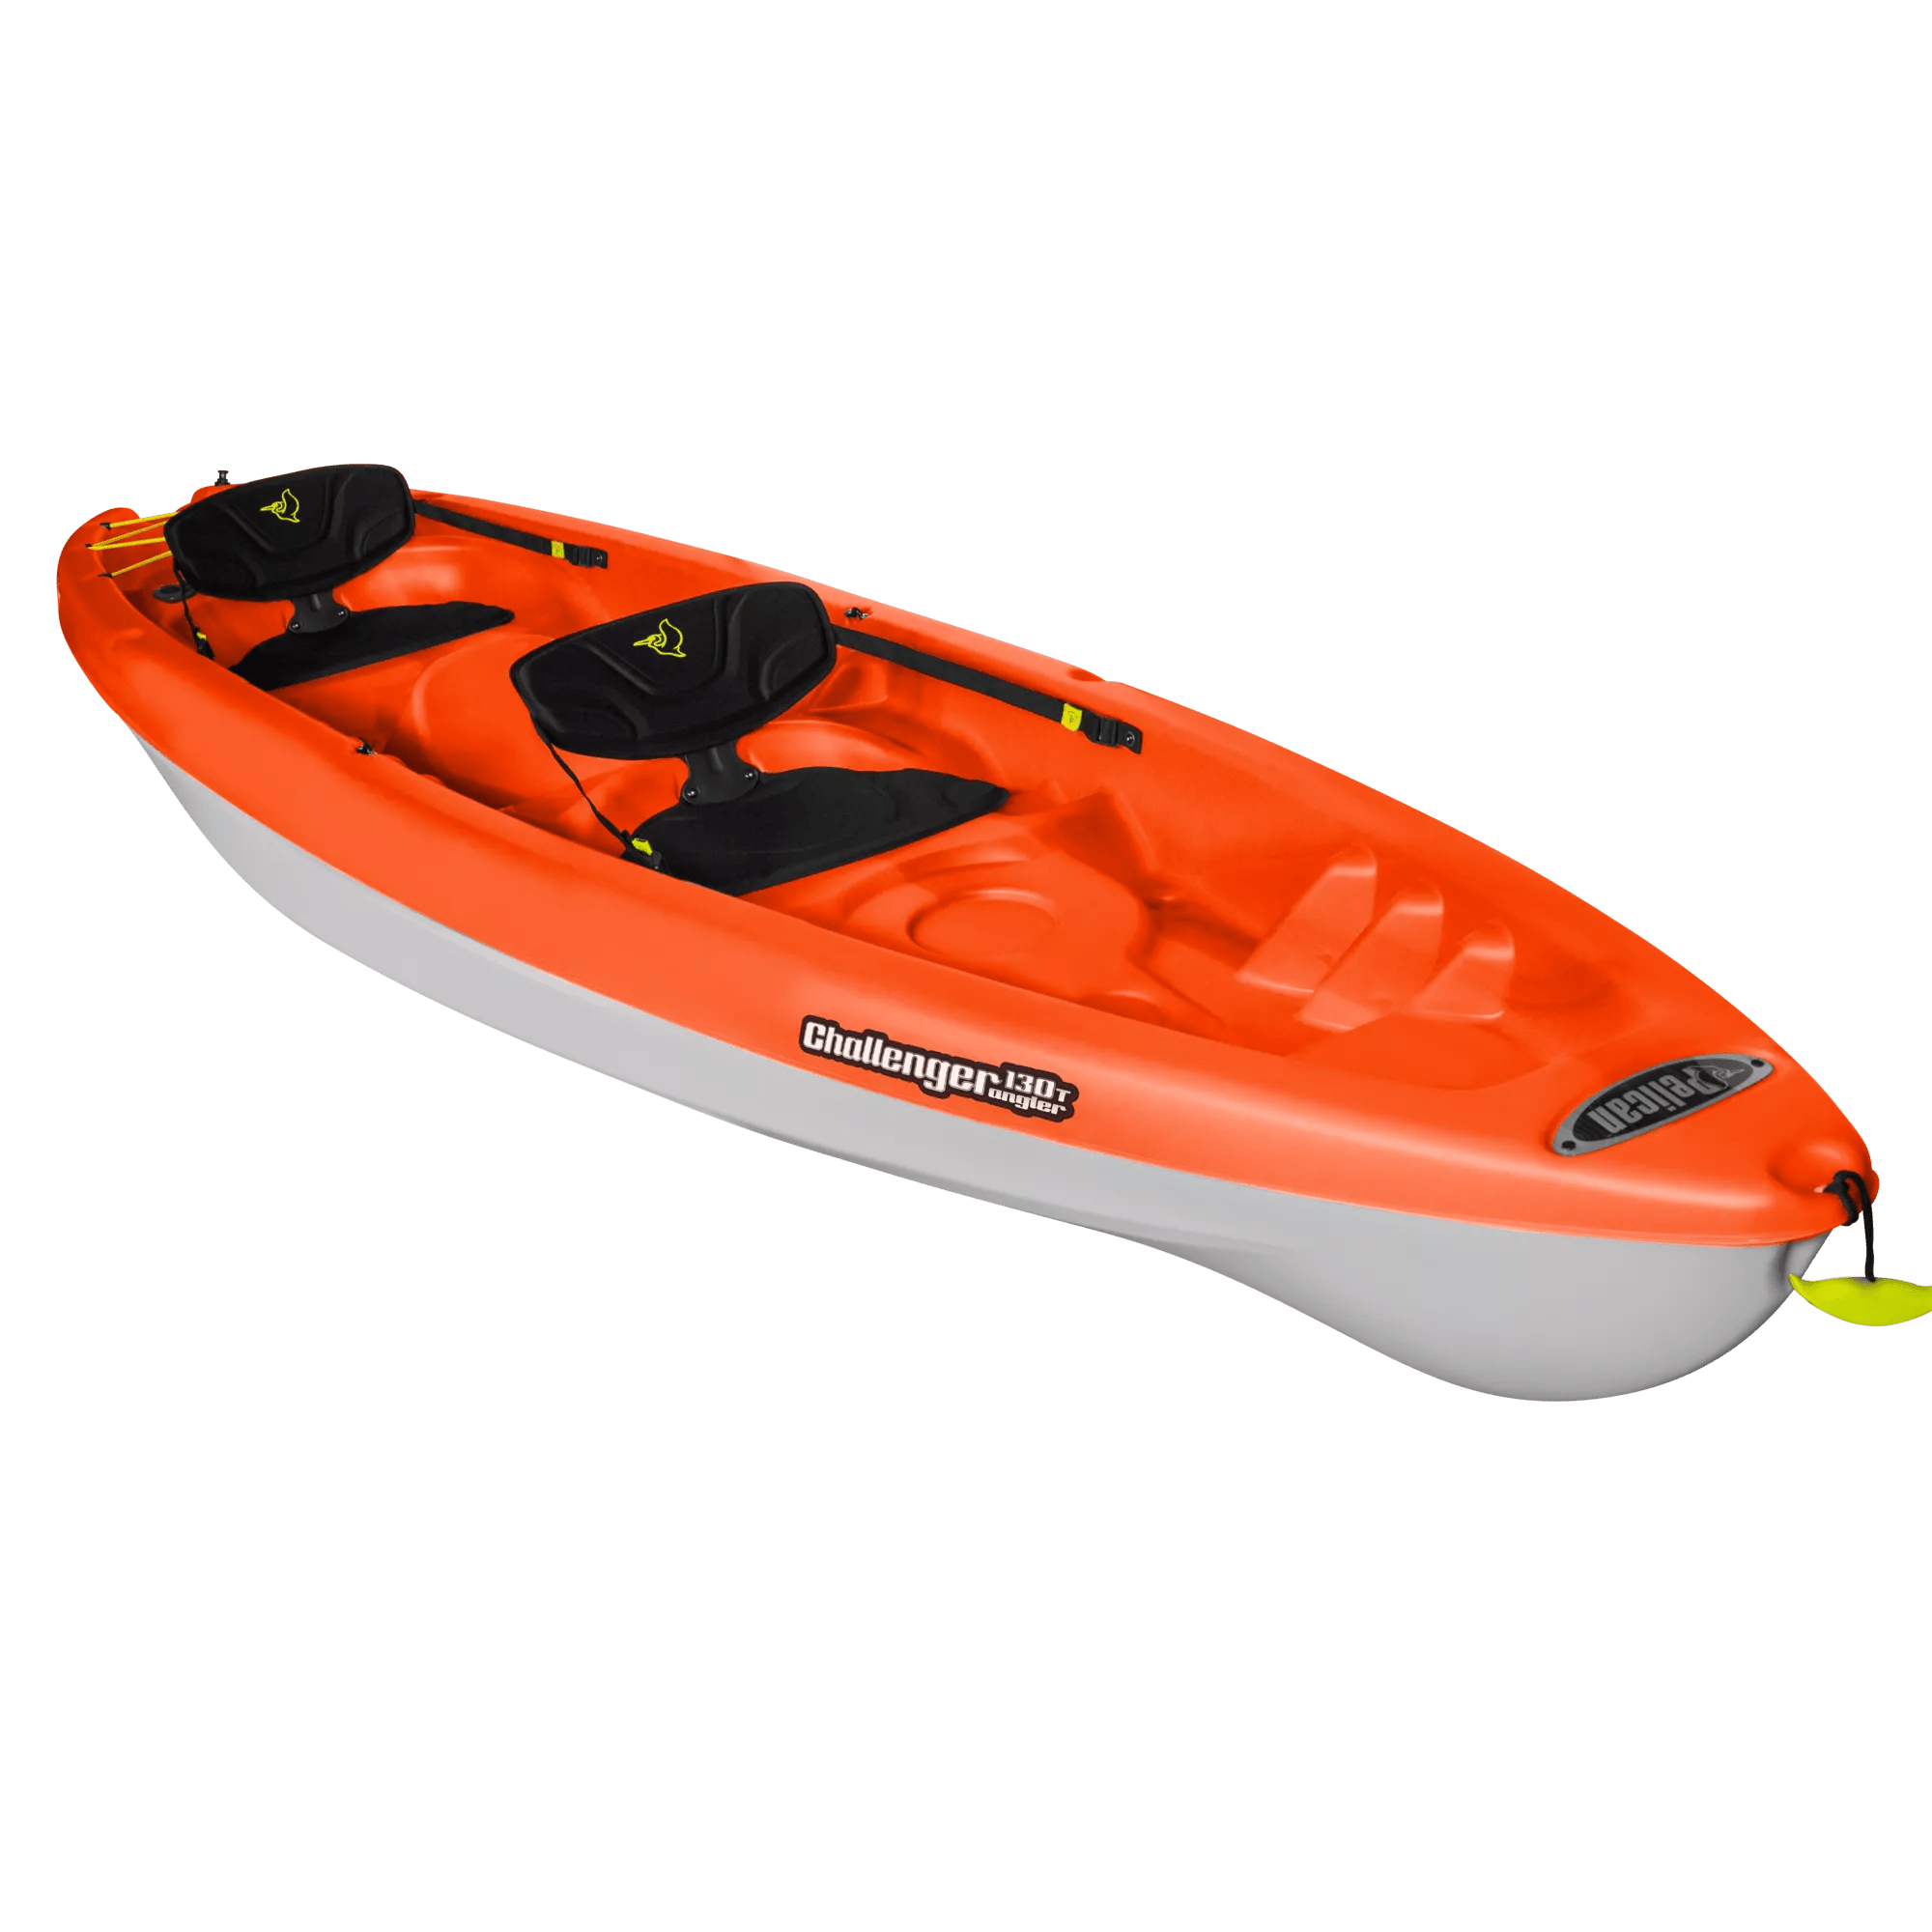 PELICAN - Challenger 130T Angler Tandem Kayak - Orange - KUA13P108 - ISO 